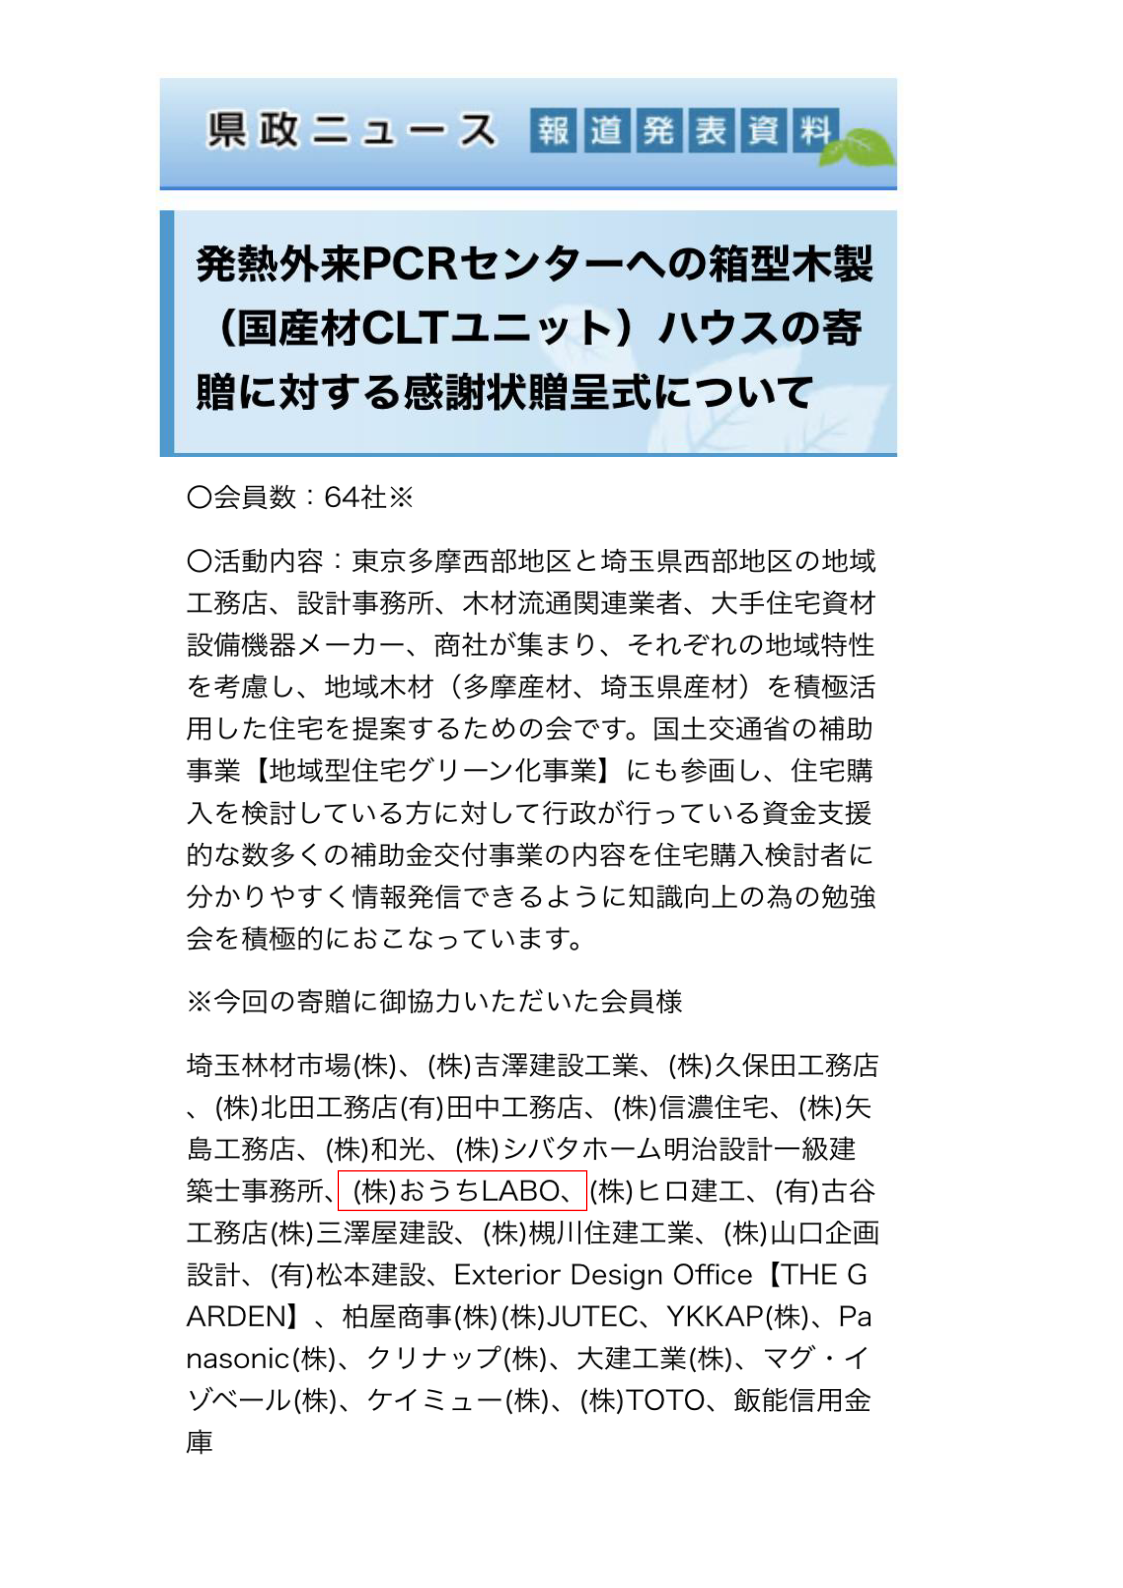 PCR検査場設置【埼玉県の新型コロナ感染対策に協力】 画像